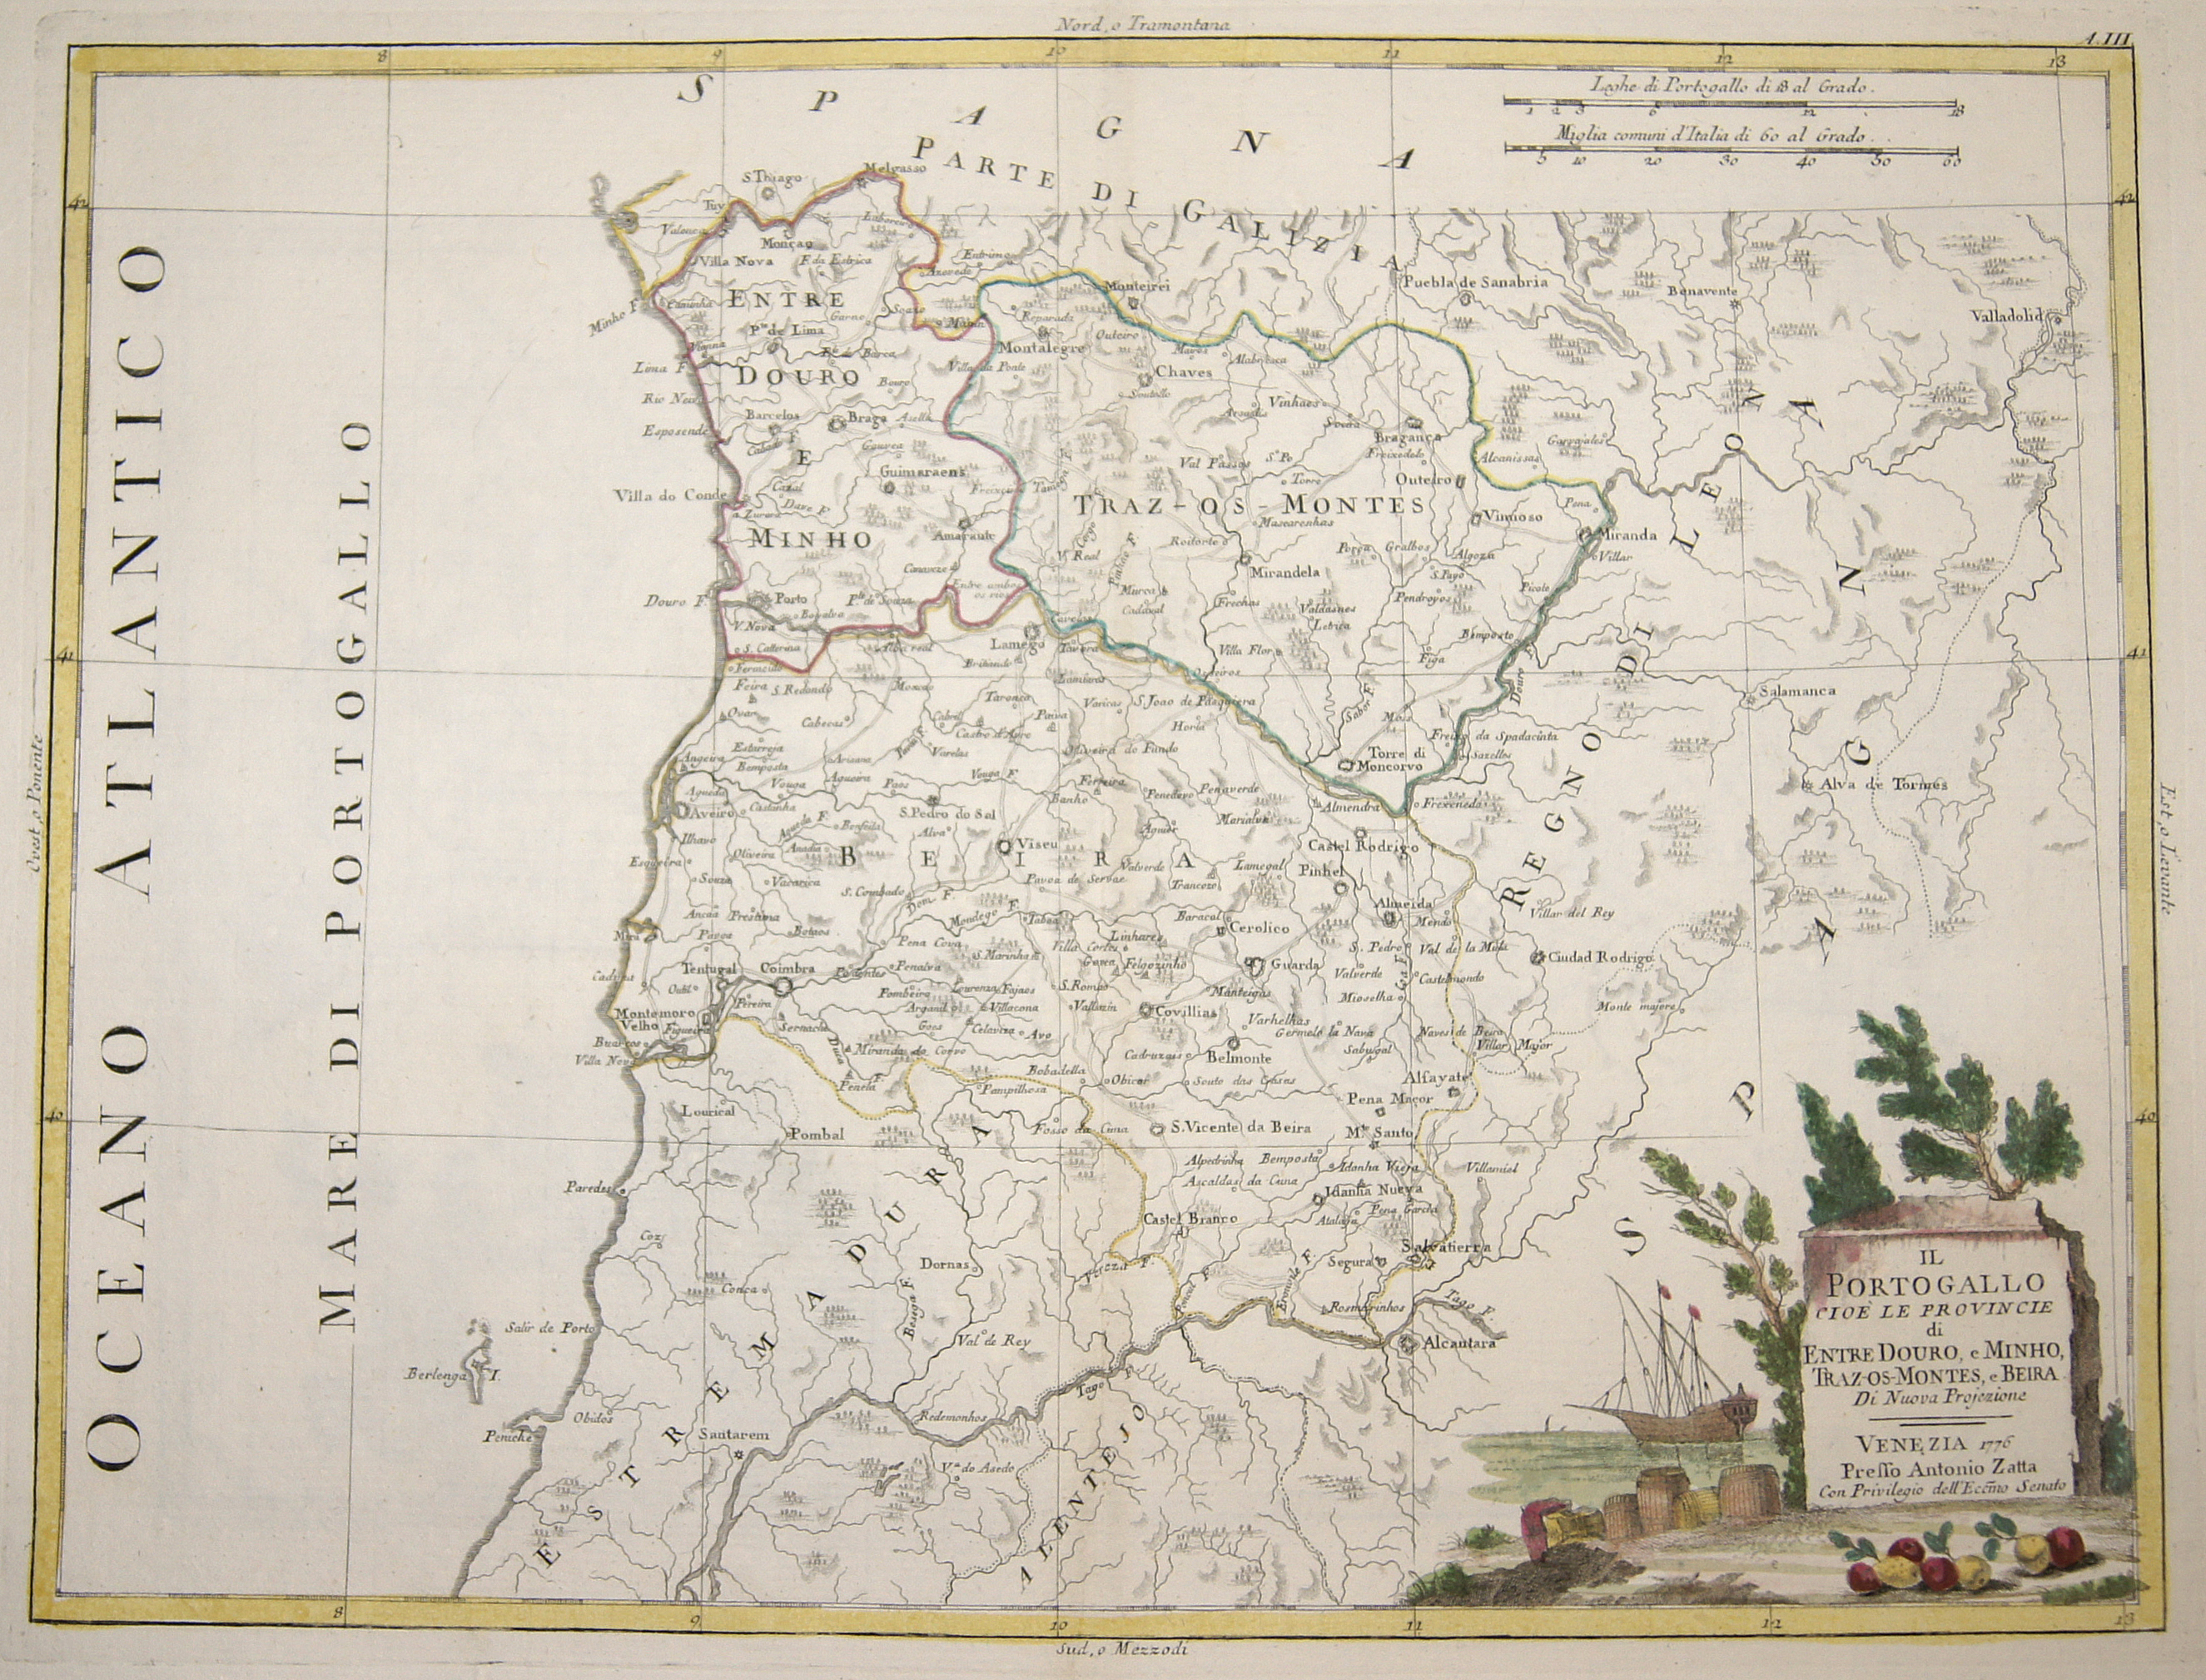 Zatta Antonio Il Portogallo cioè le Provincie di Entre Douro, e Minho, Traz-Os-Montes, e Beira.